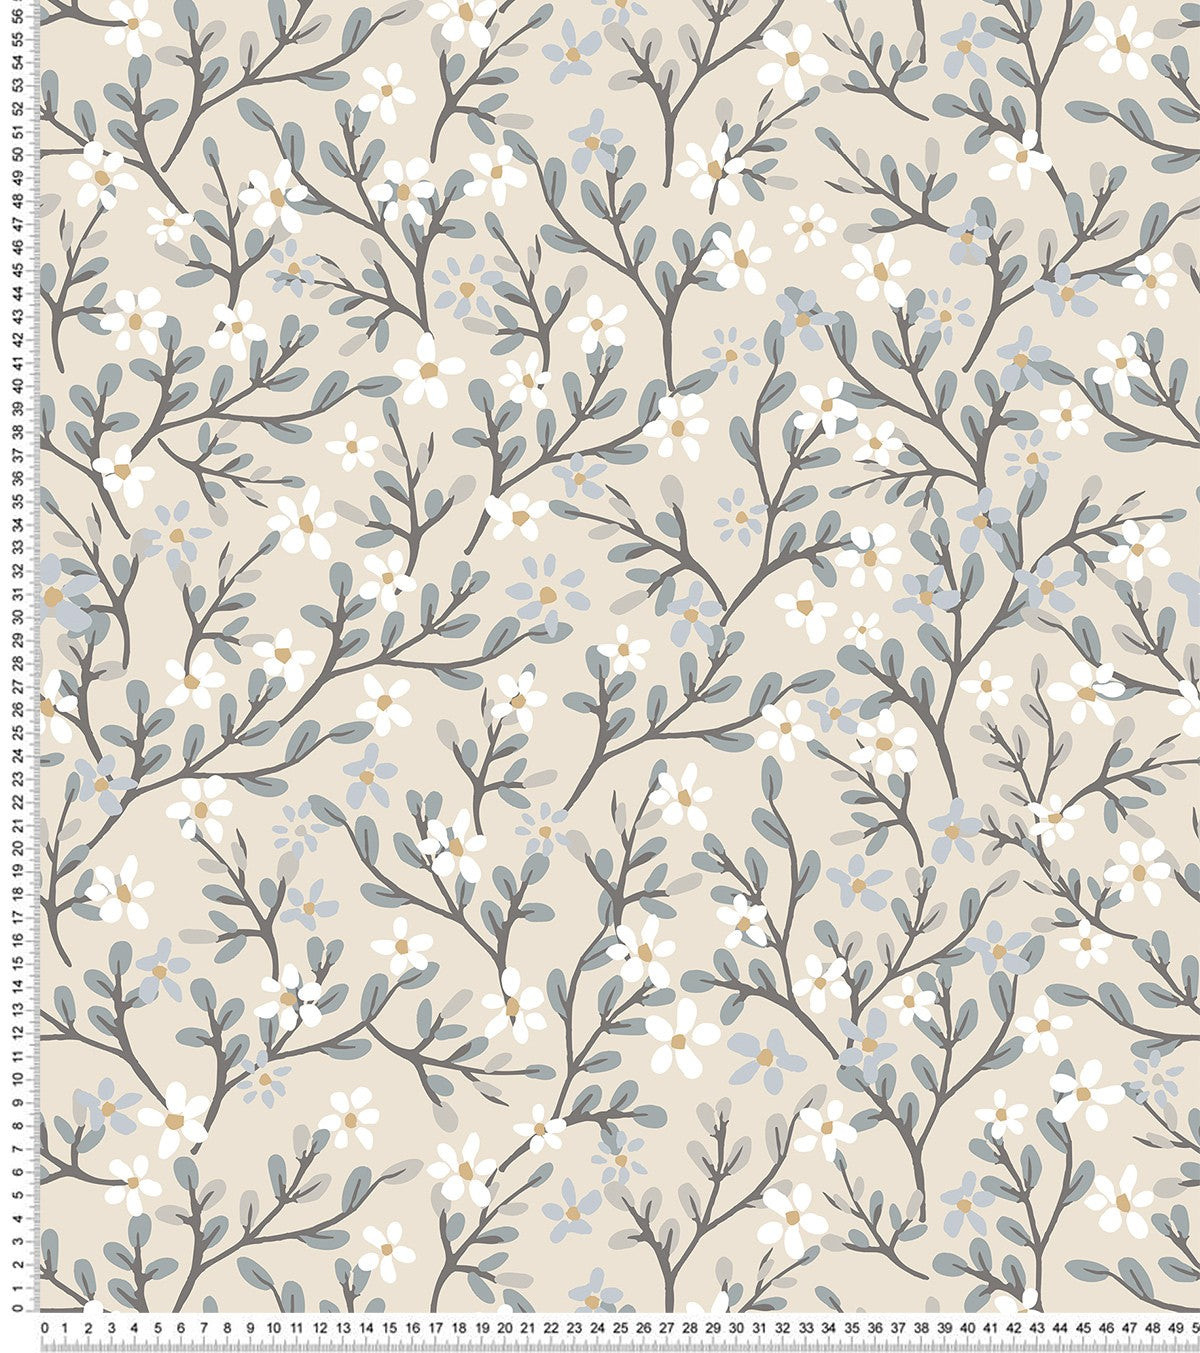 BRAYLYNN - Children's wallpaper - Flower pattern